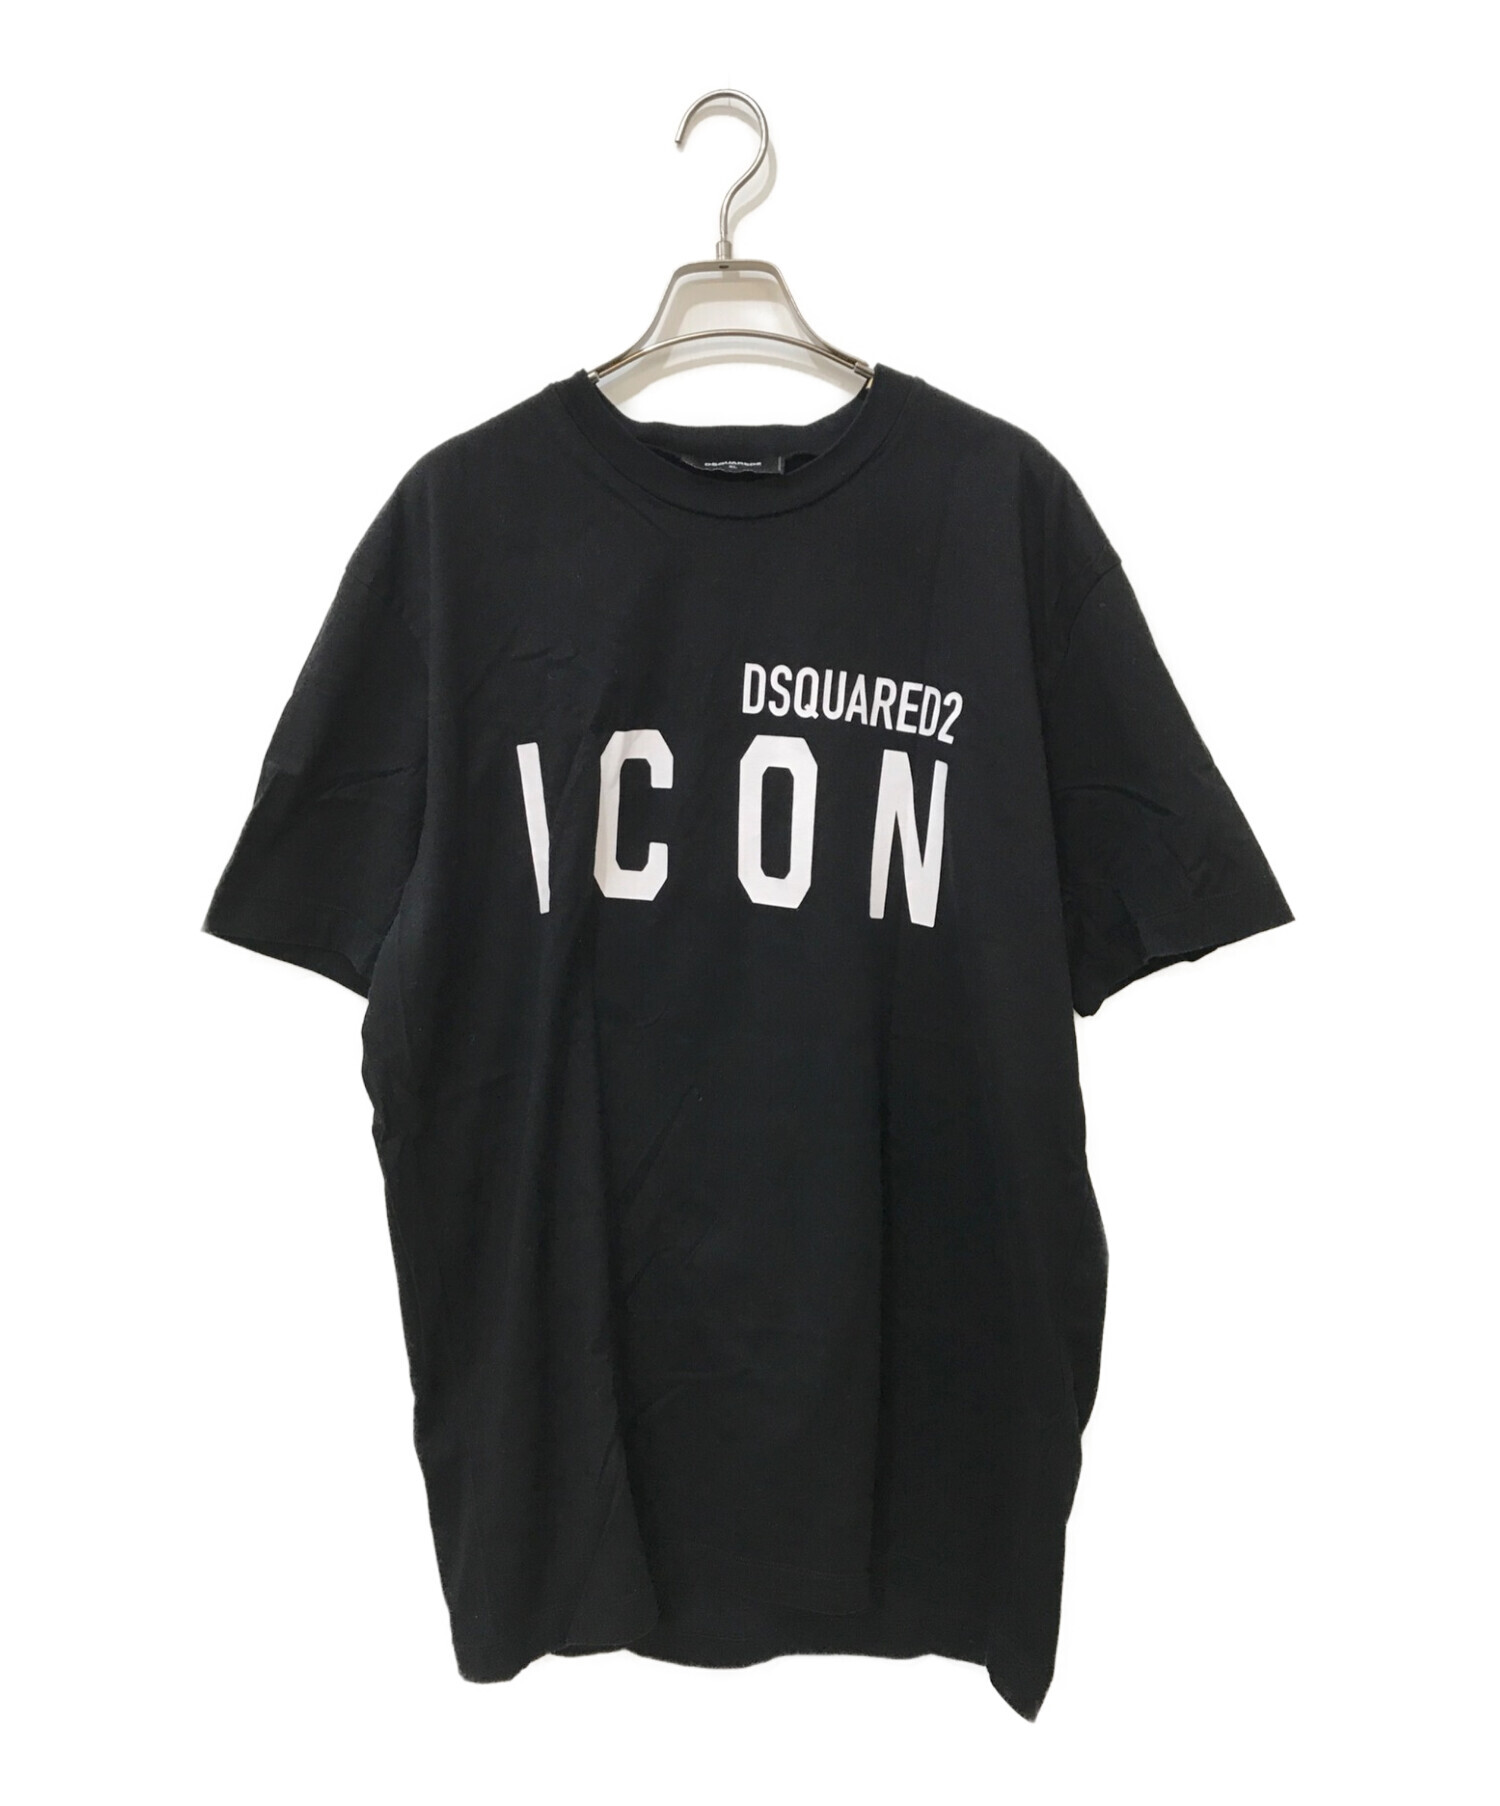 DSQUARED2 (ディースクエアード) ICON ロゴTシャツ ブラック サイズ:XL